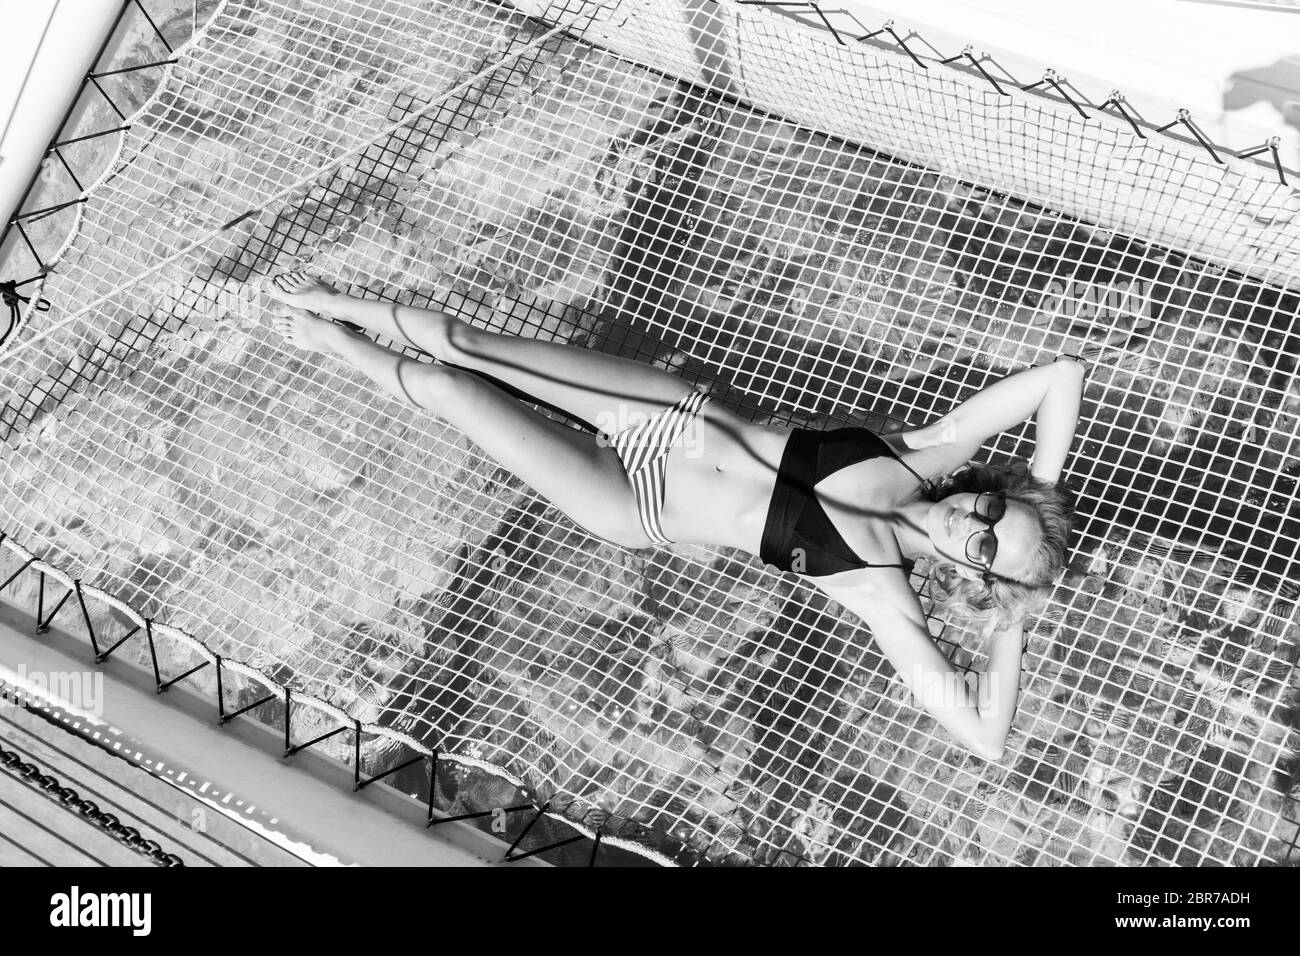 Bikini Womanin bronceado y relajándose en un verano sailin crucero, acostado en la hamaca de un catamarán de lujo en barco. Imagen en blanco y negro. Foto de stock